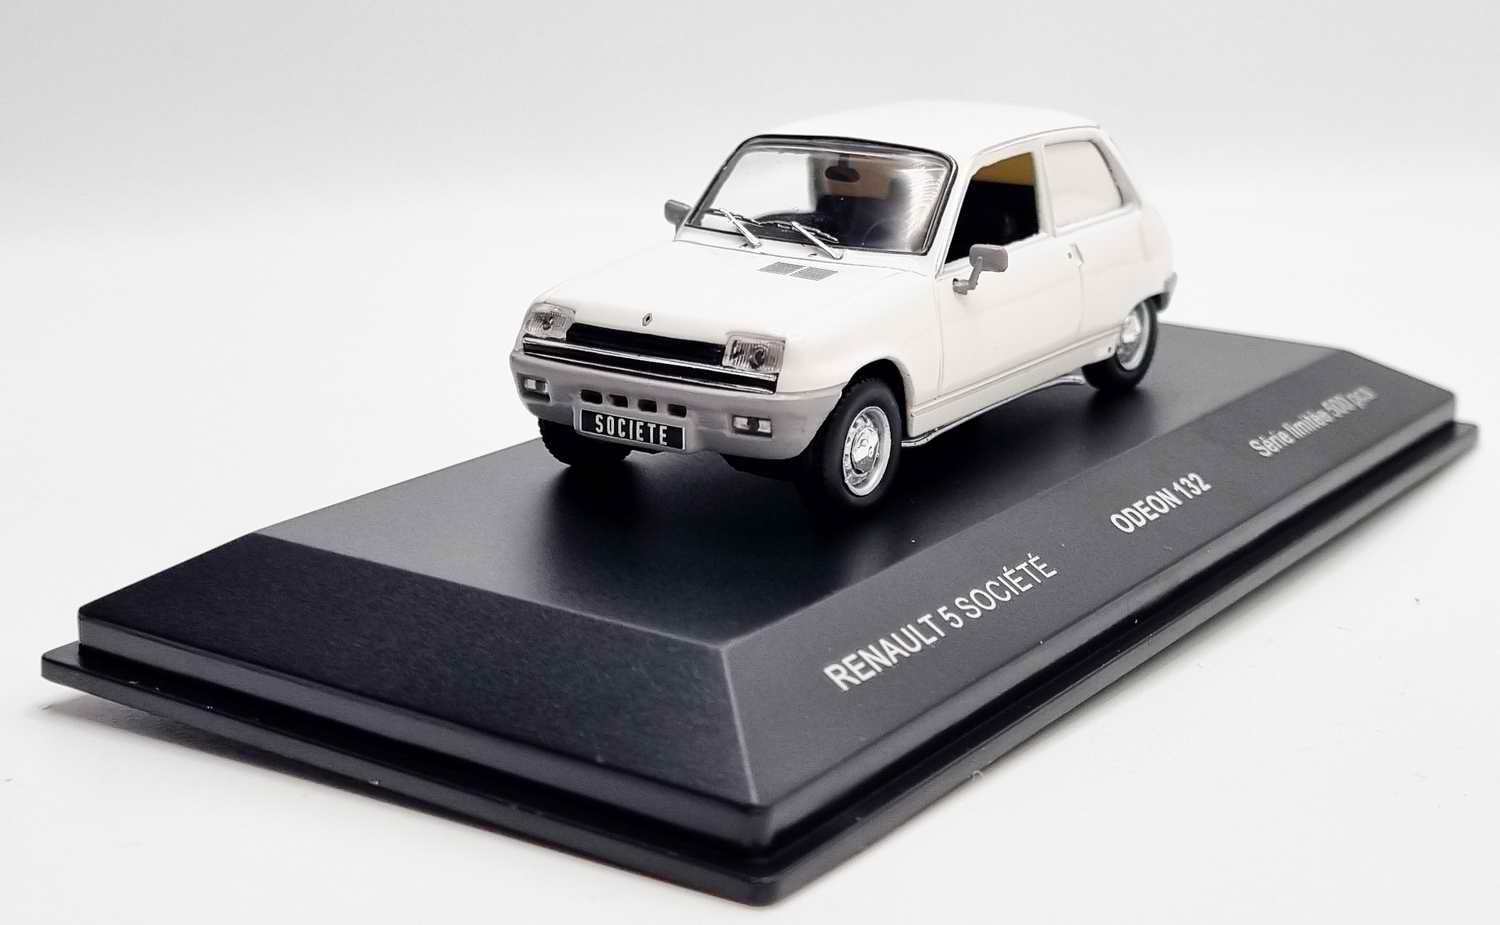 Voiture R5 Miniature Renault 5 Société 1/43